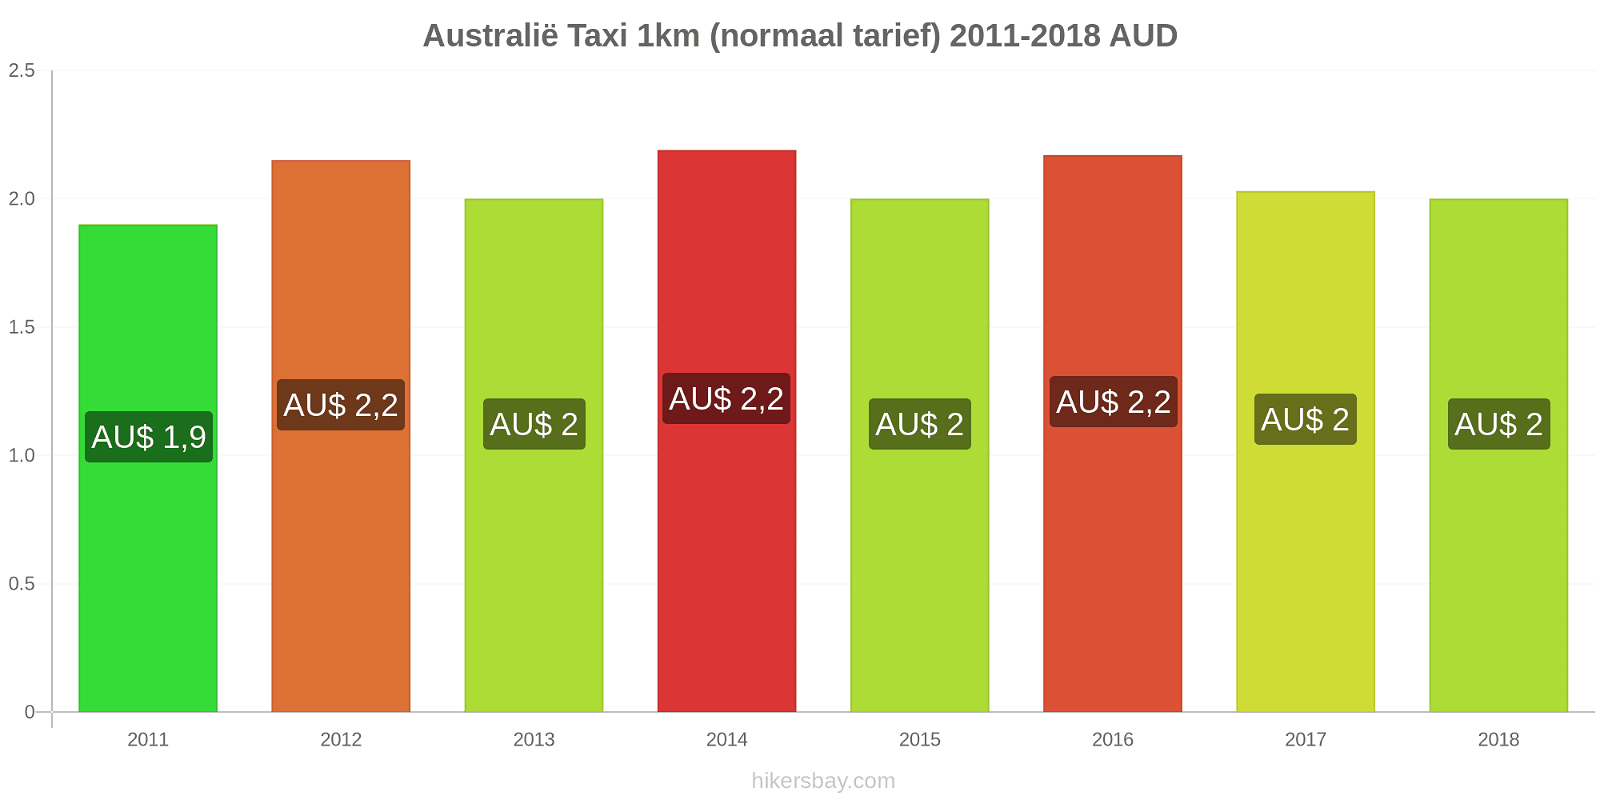 Australië prijswijzigingen Taxi 1km (normaal tarief) hikersbay.com